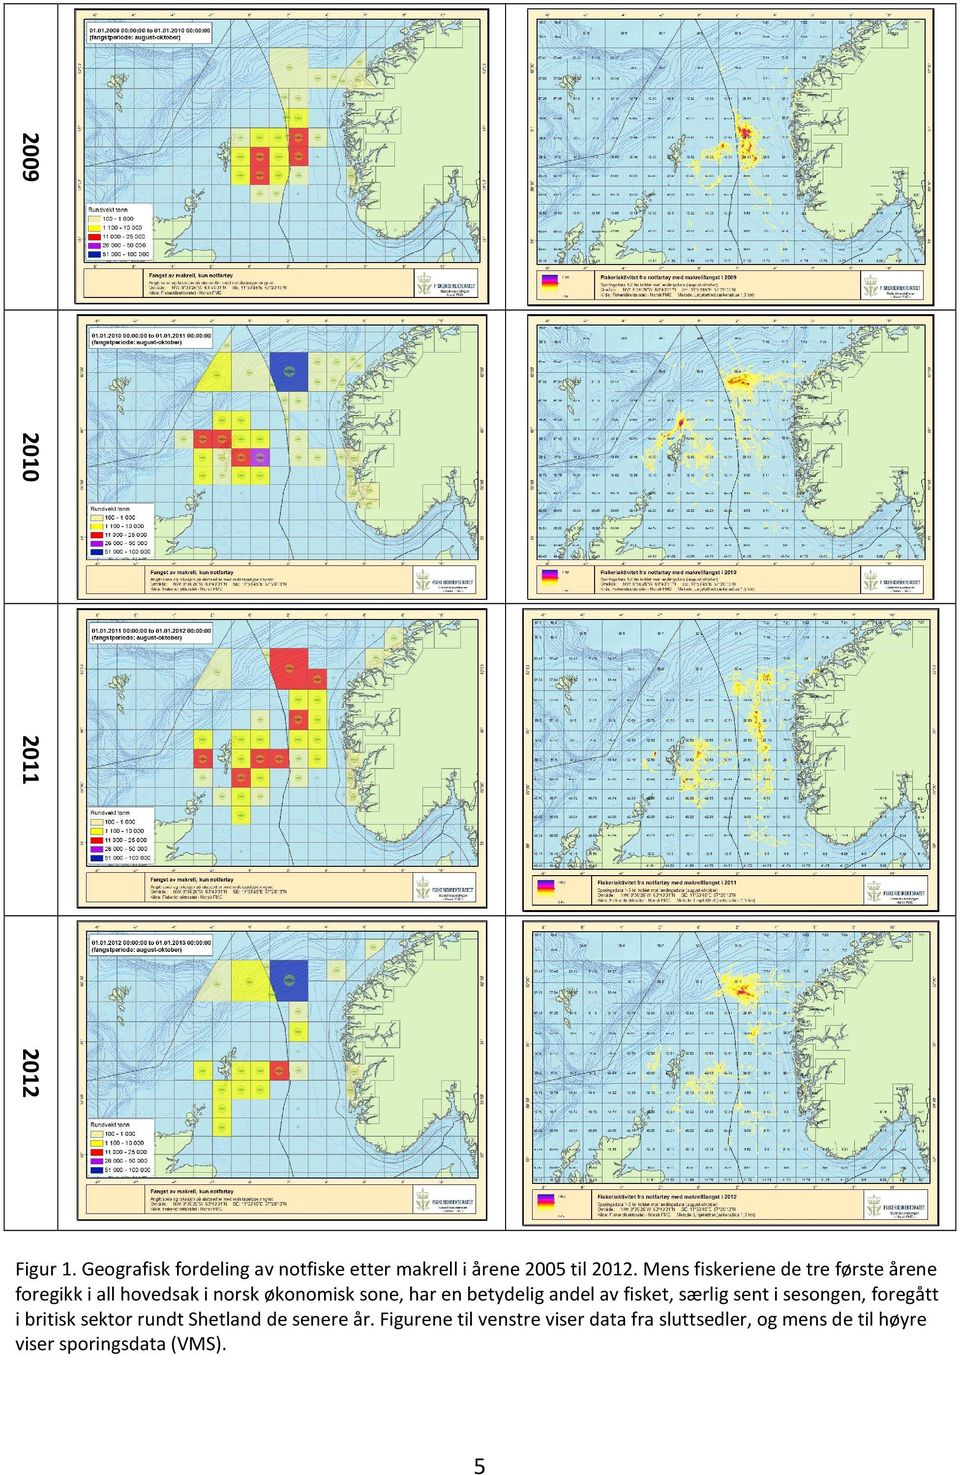 betydelig andel av fisket, særlig sent i sesongen, foregått i britisk sektor rundt Shetland de